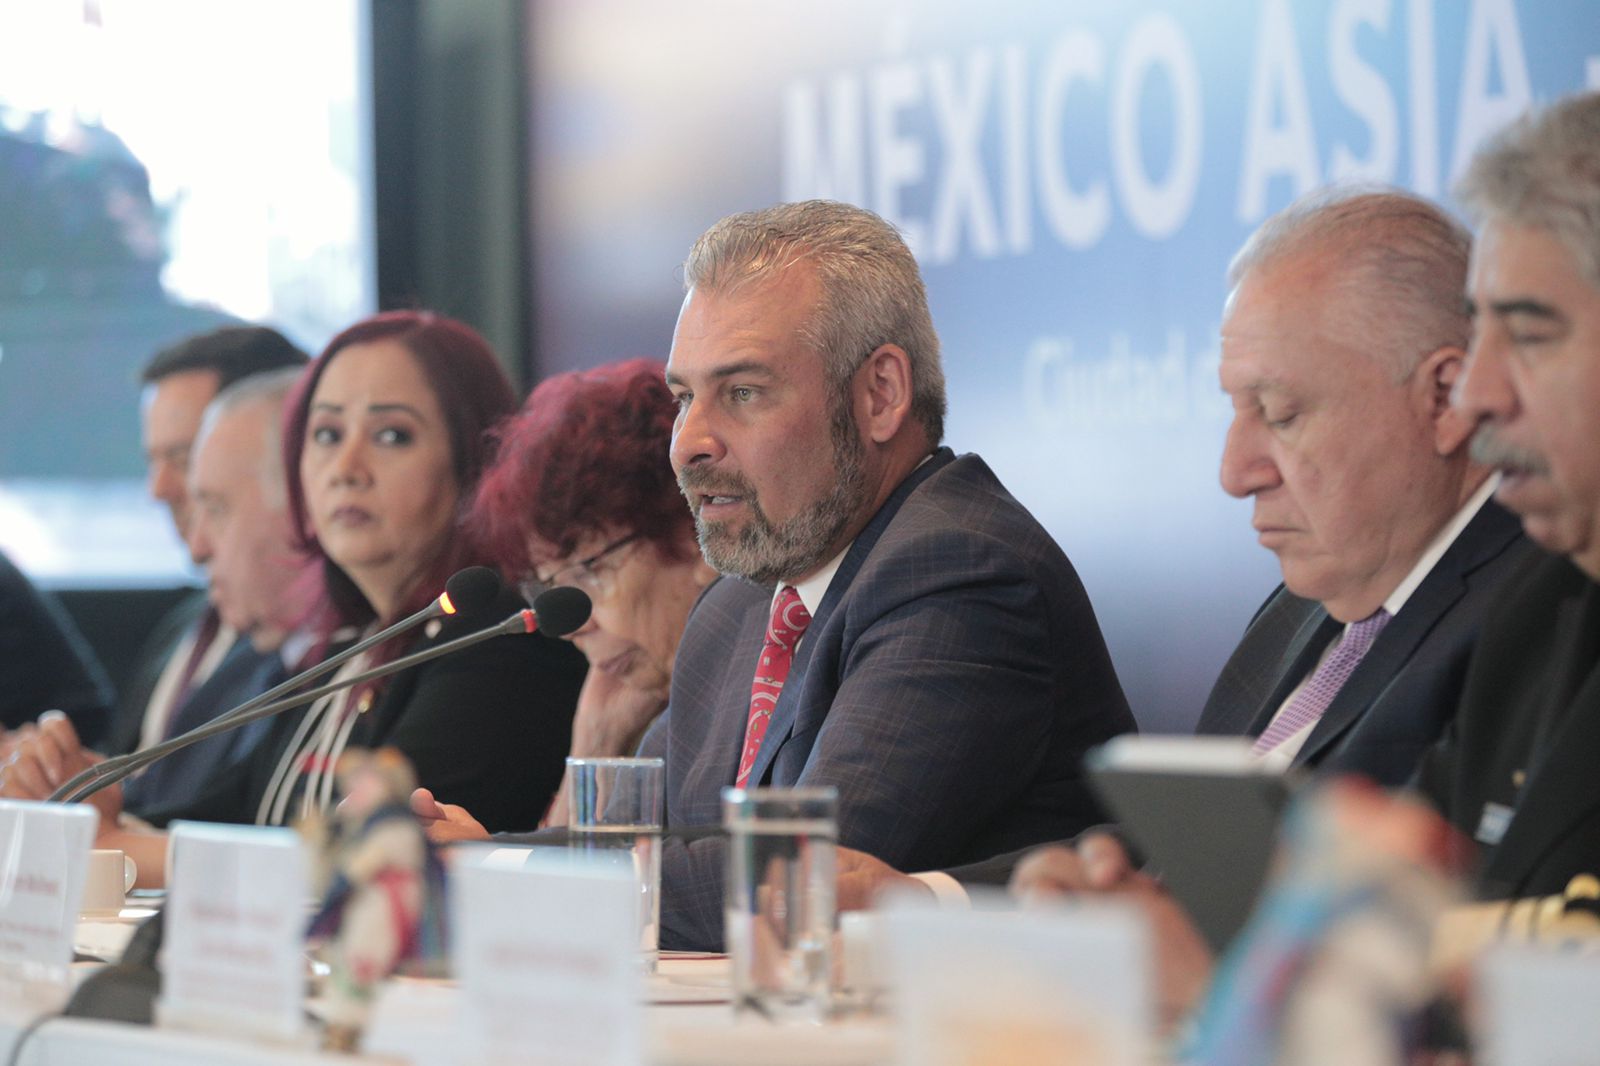 Asume Bedolla Coordinación de la Comisión México Asia-Pacífico de la Conago